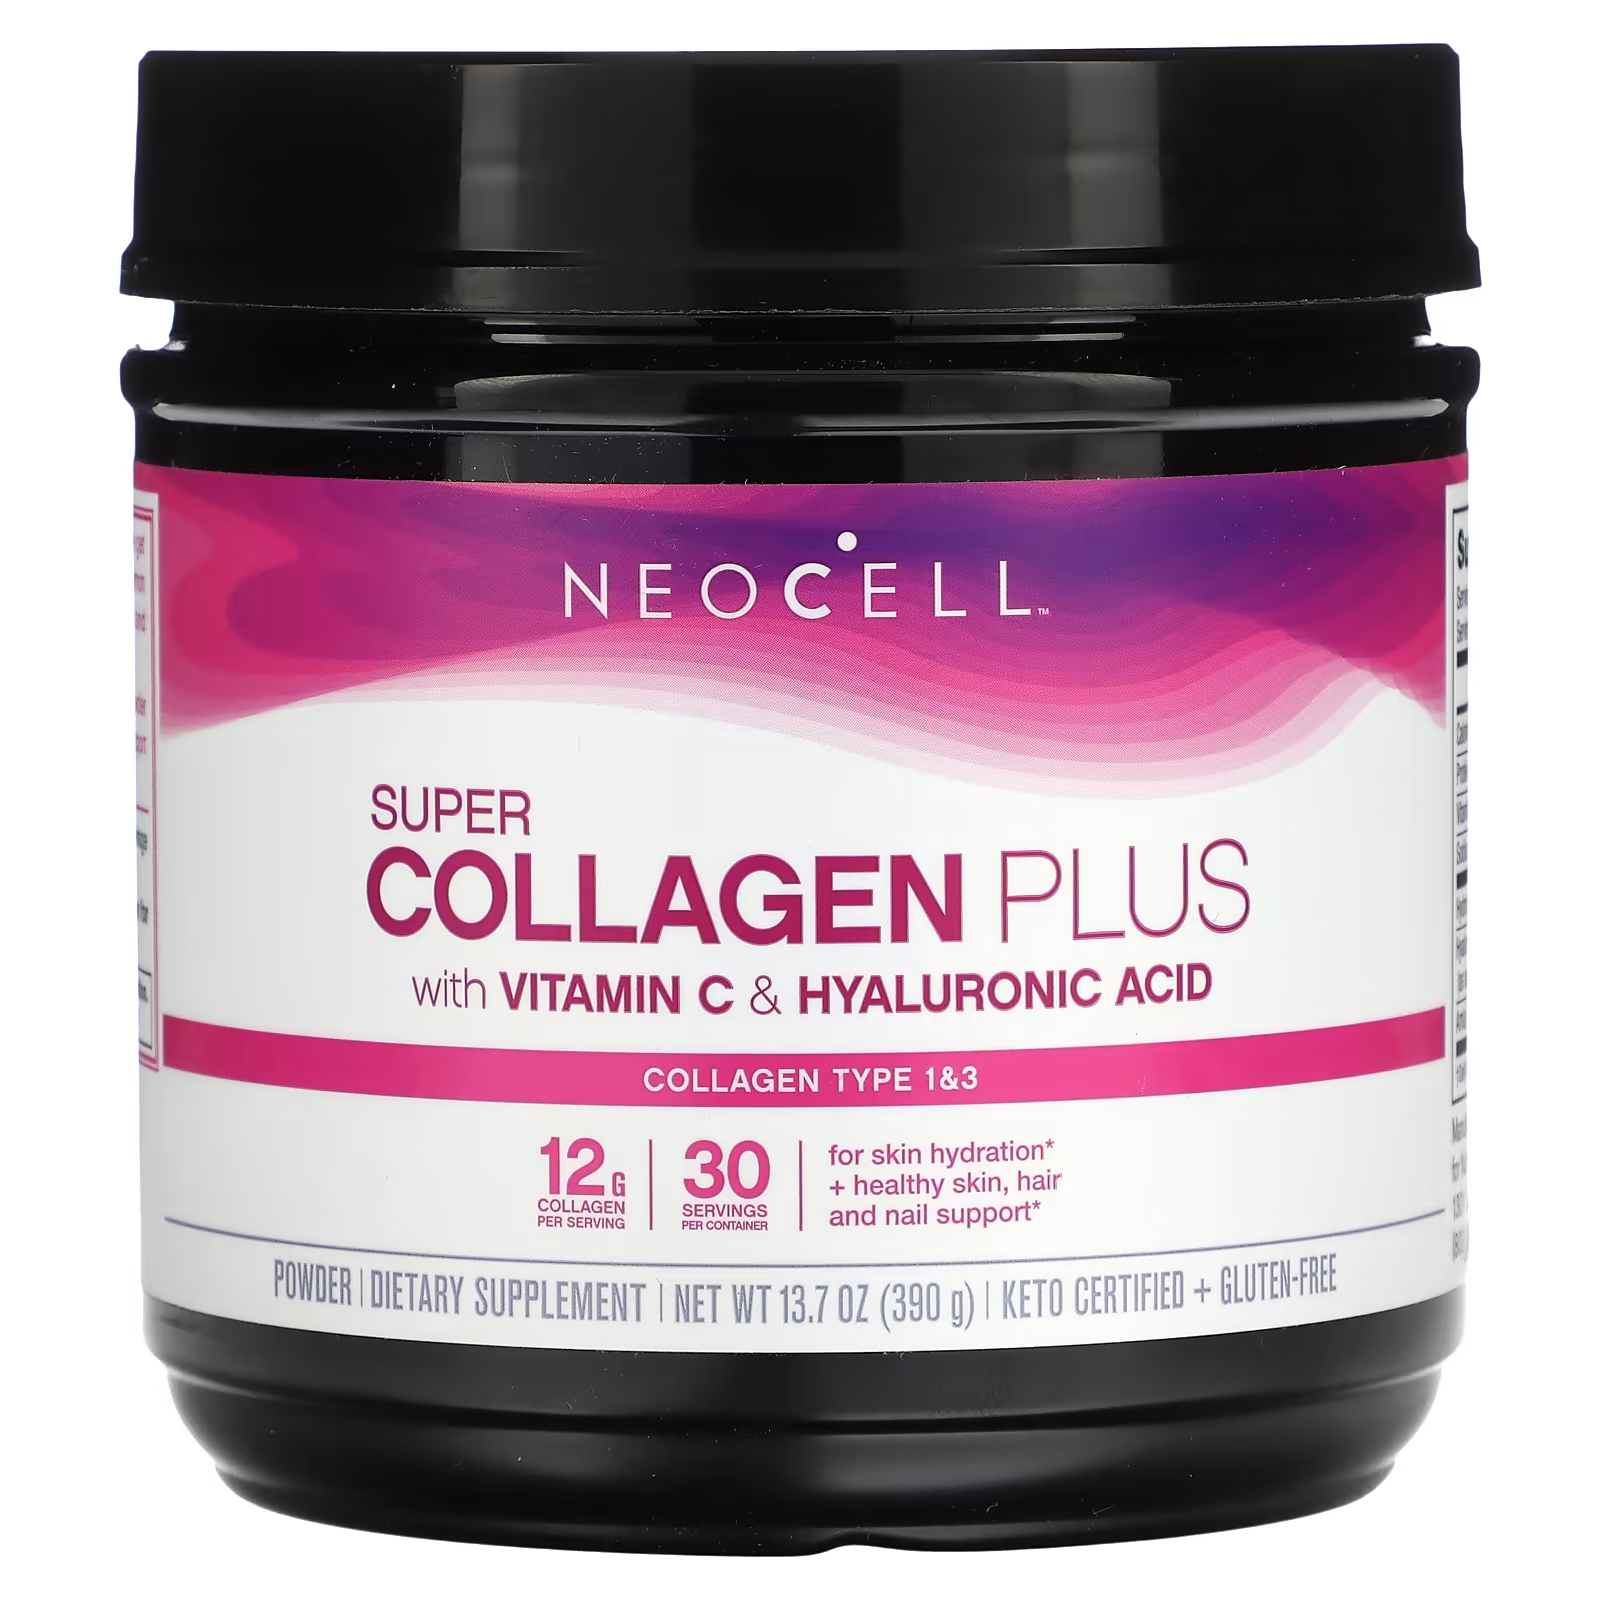 Пищевая добавка NeoCell Super Collagen Plus с витамином C и гиалуроновой кислотой, 390г neocell super collagen plus с витамином c и гиалуроновой кислотой 390 г 13 7 унции